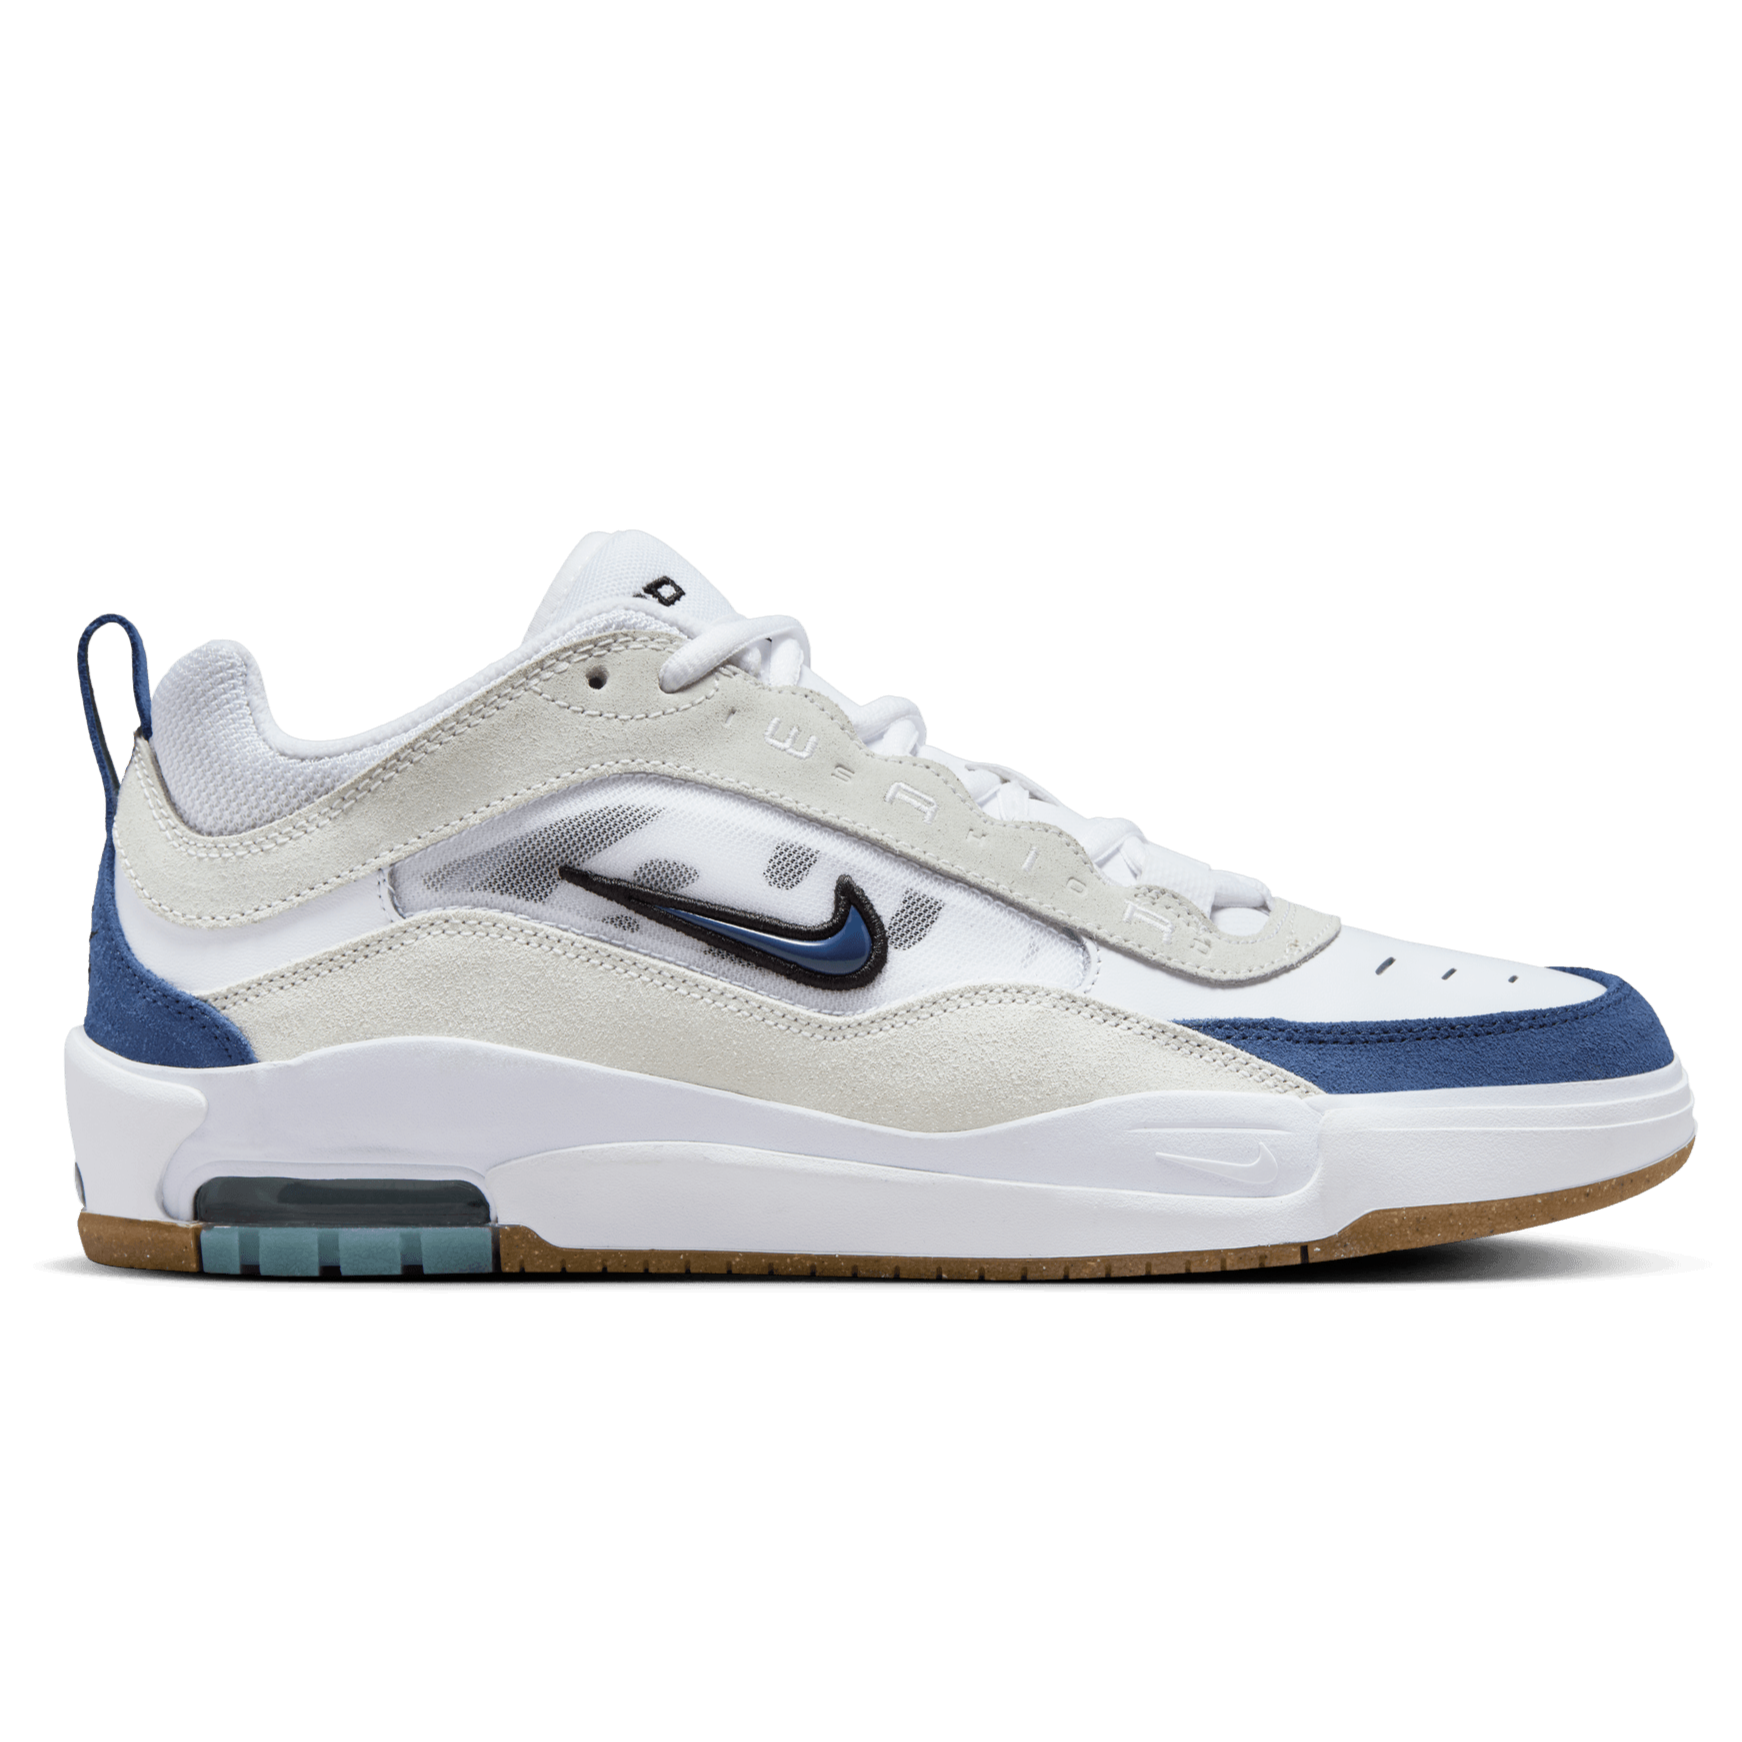 White/Navy Air Max Ishod 2 Nike SB Skate Shoe